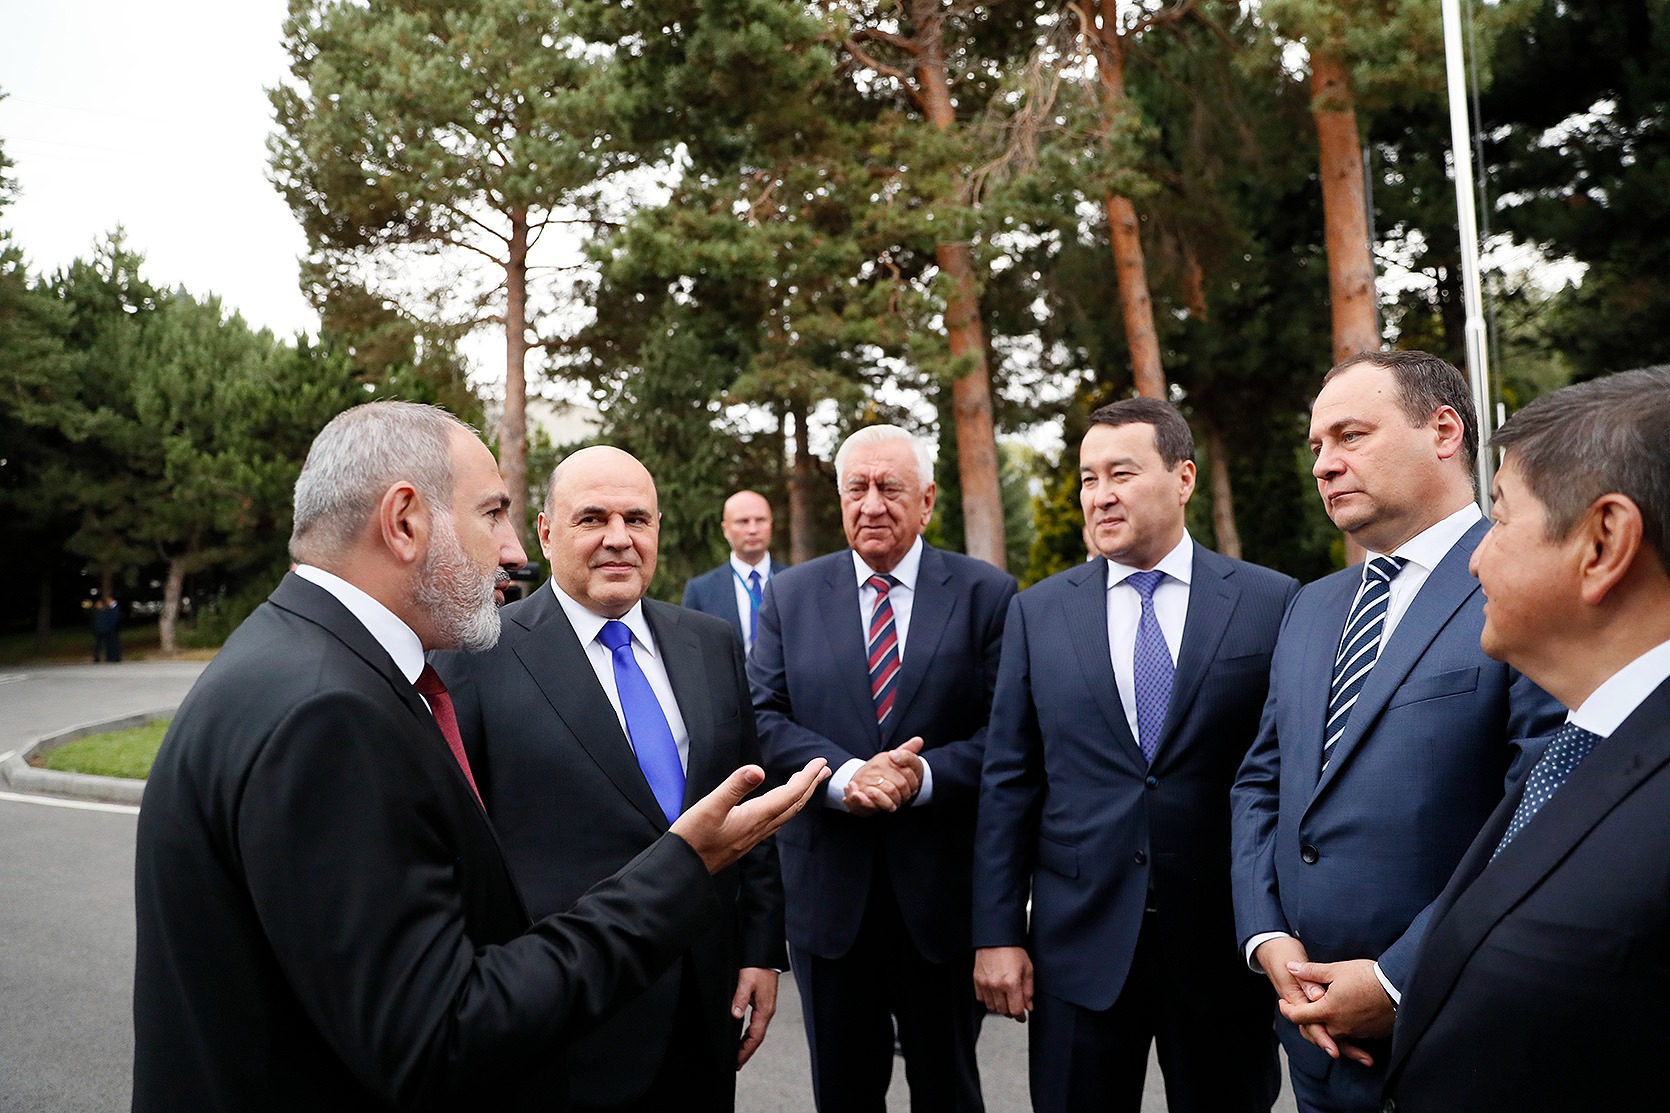 Премьер-министр Пашинян принял участие в заседании Евразийского межправительственного совета в узком составе